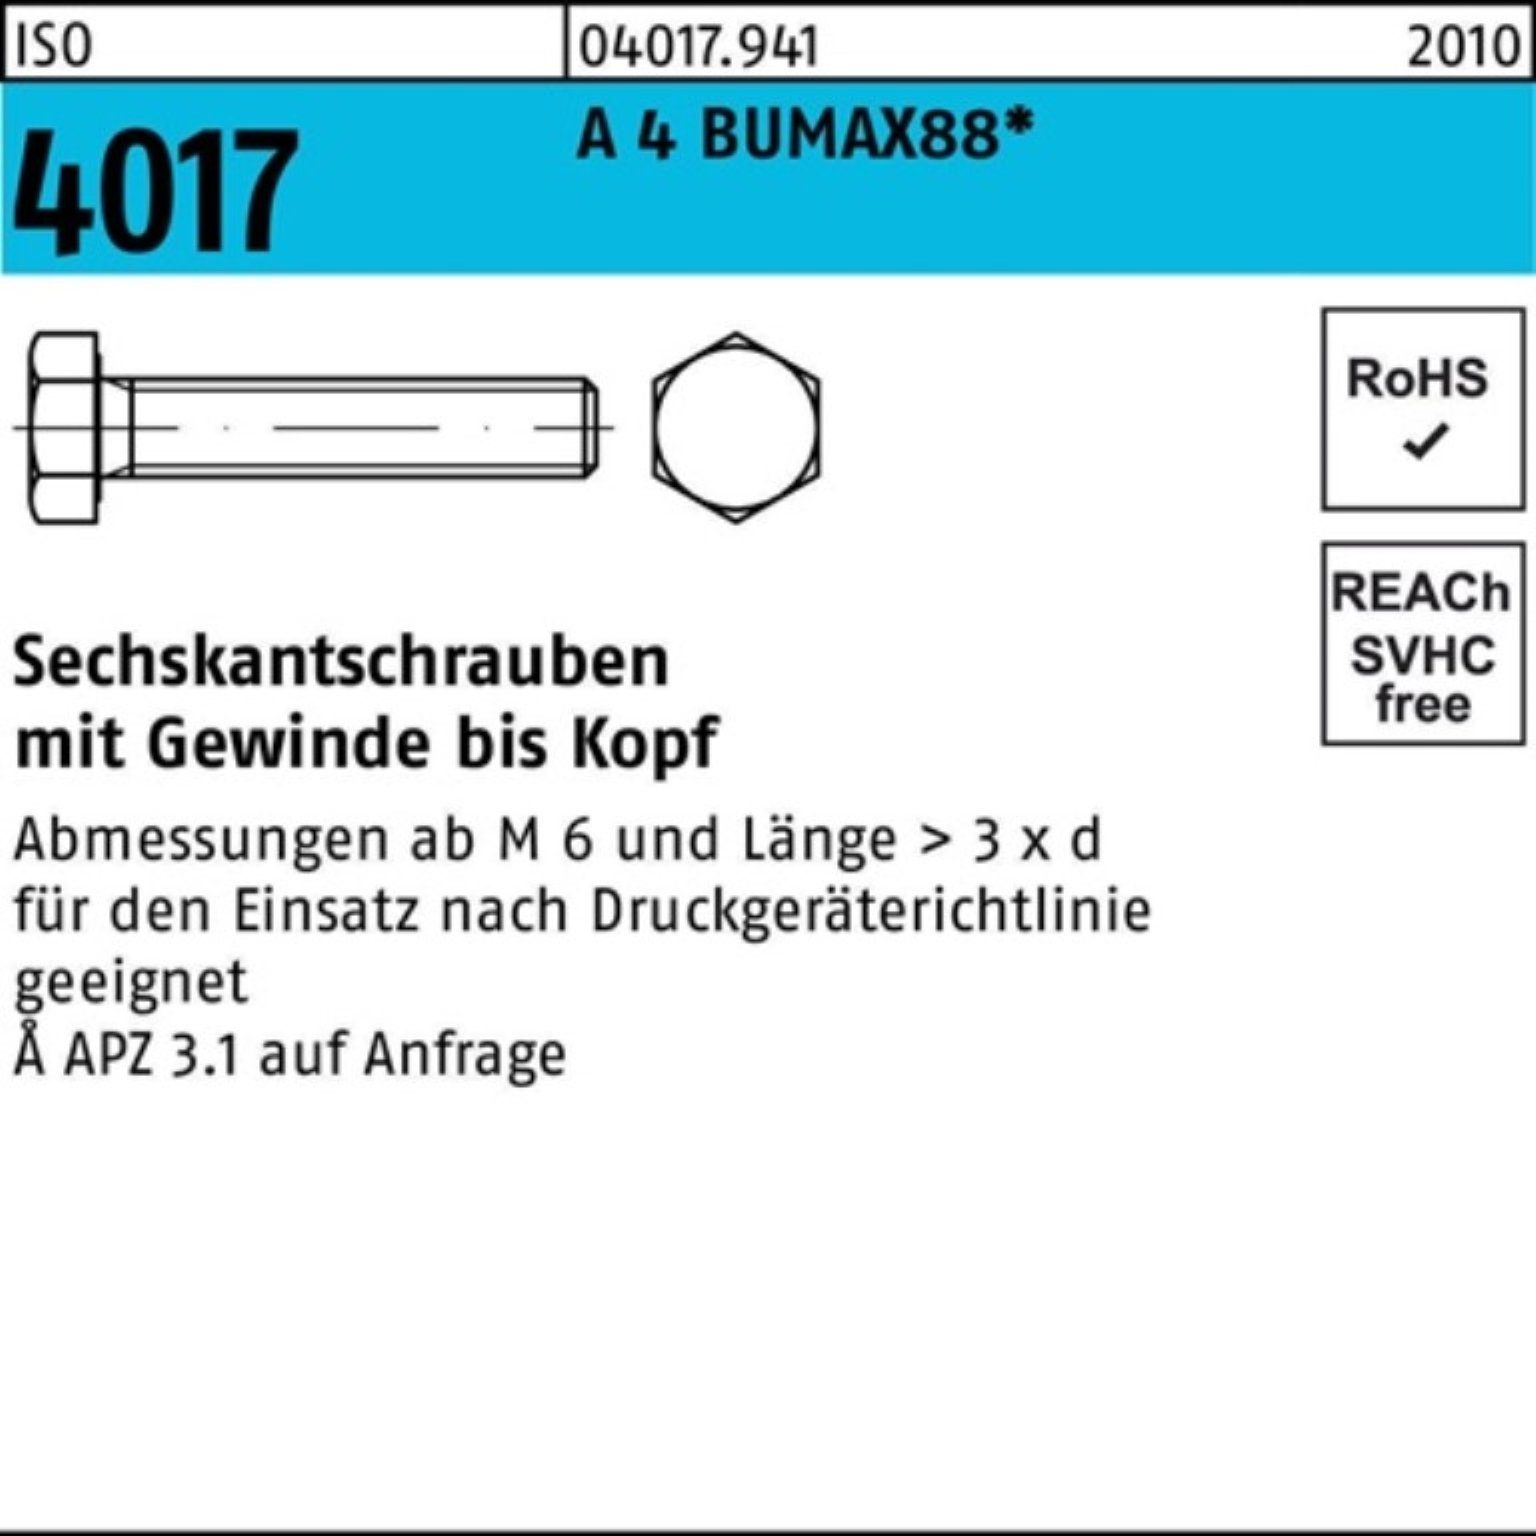 Bufab Sechskantschraube 100er Pack Sechskantschraube ISO 4017 VG M10x 20 A 4 BUMAX88 50 Stück | Schrauben